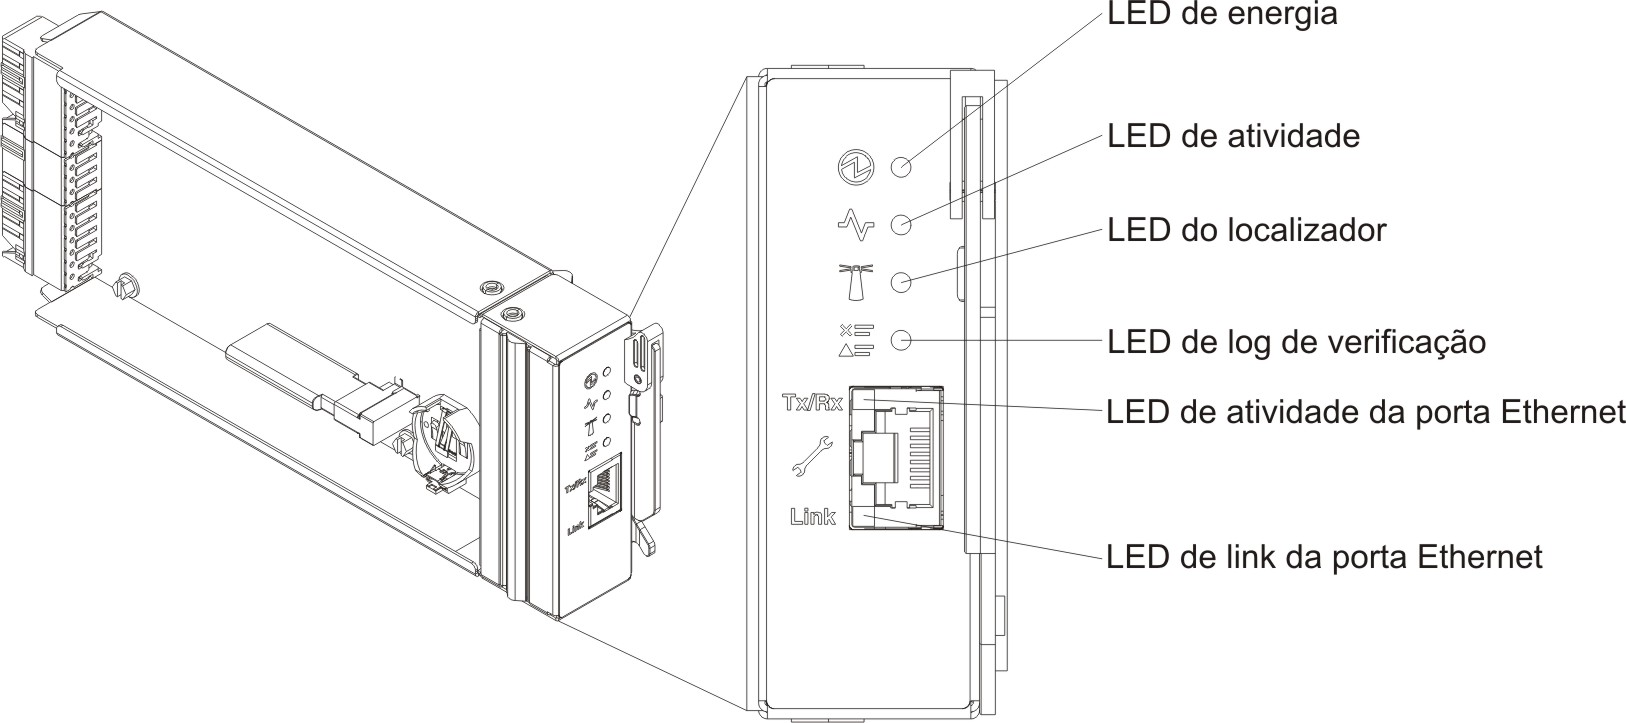 Gráfico do controlador de ventilador e energia com textos explicativos para os LEDs, controles e conectores.